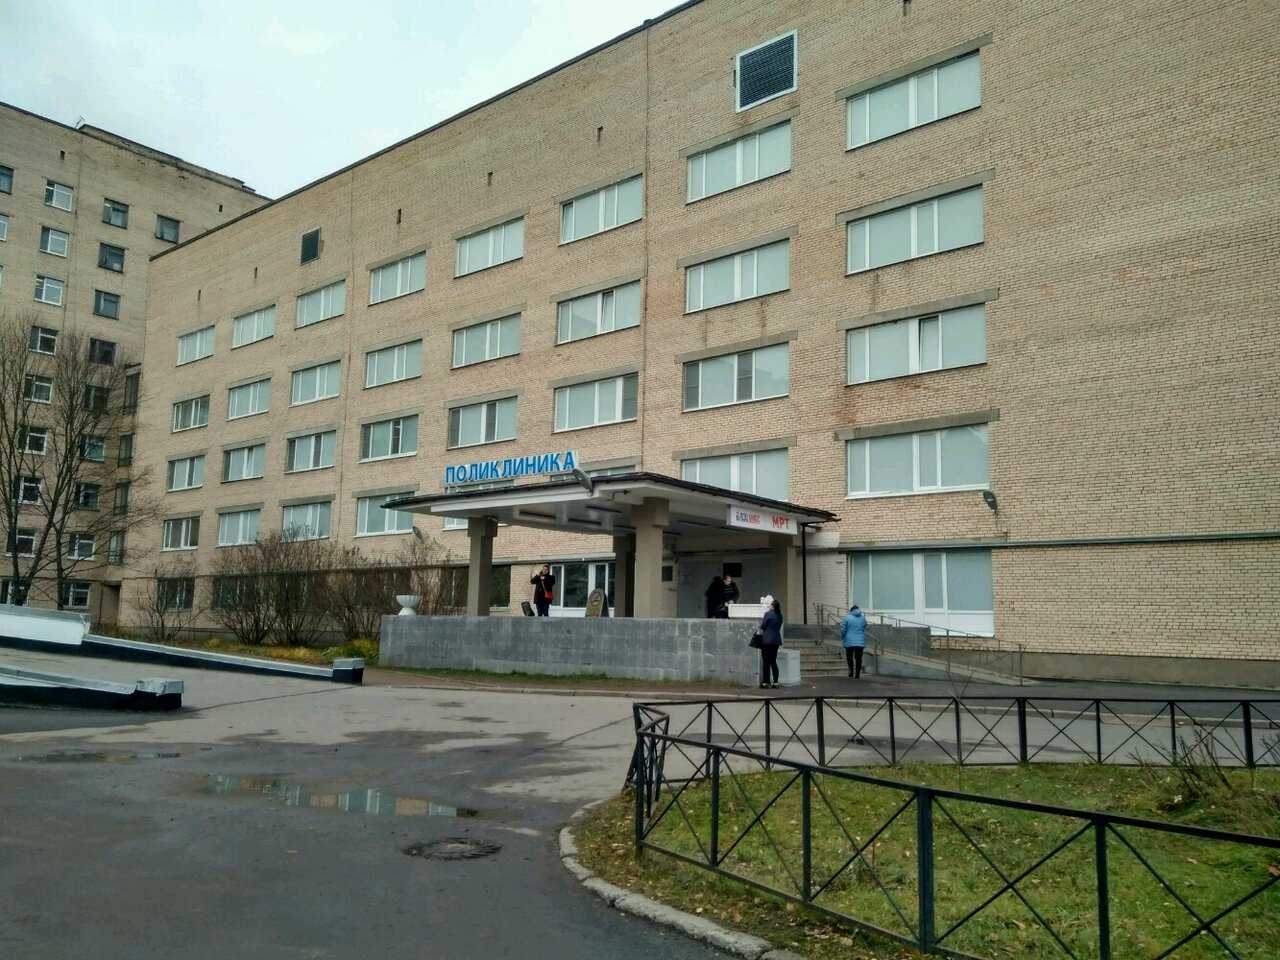 александровская больница санкт петербург